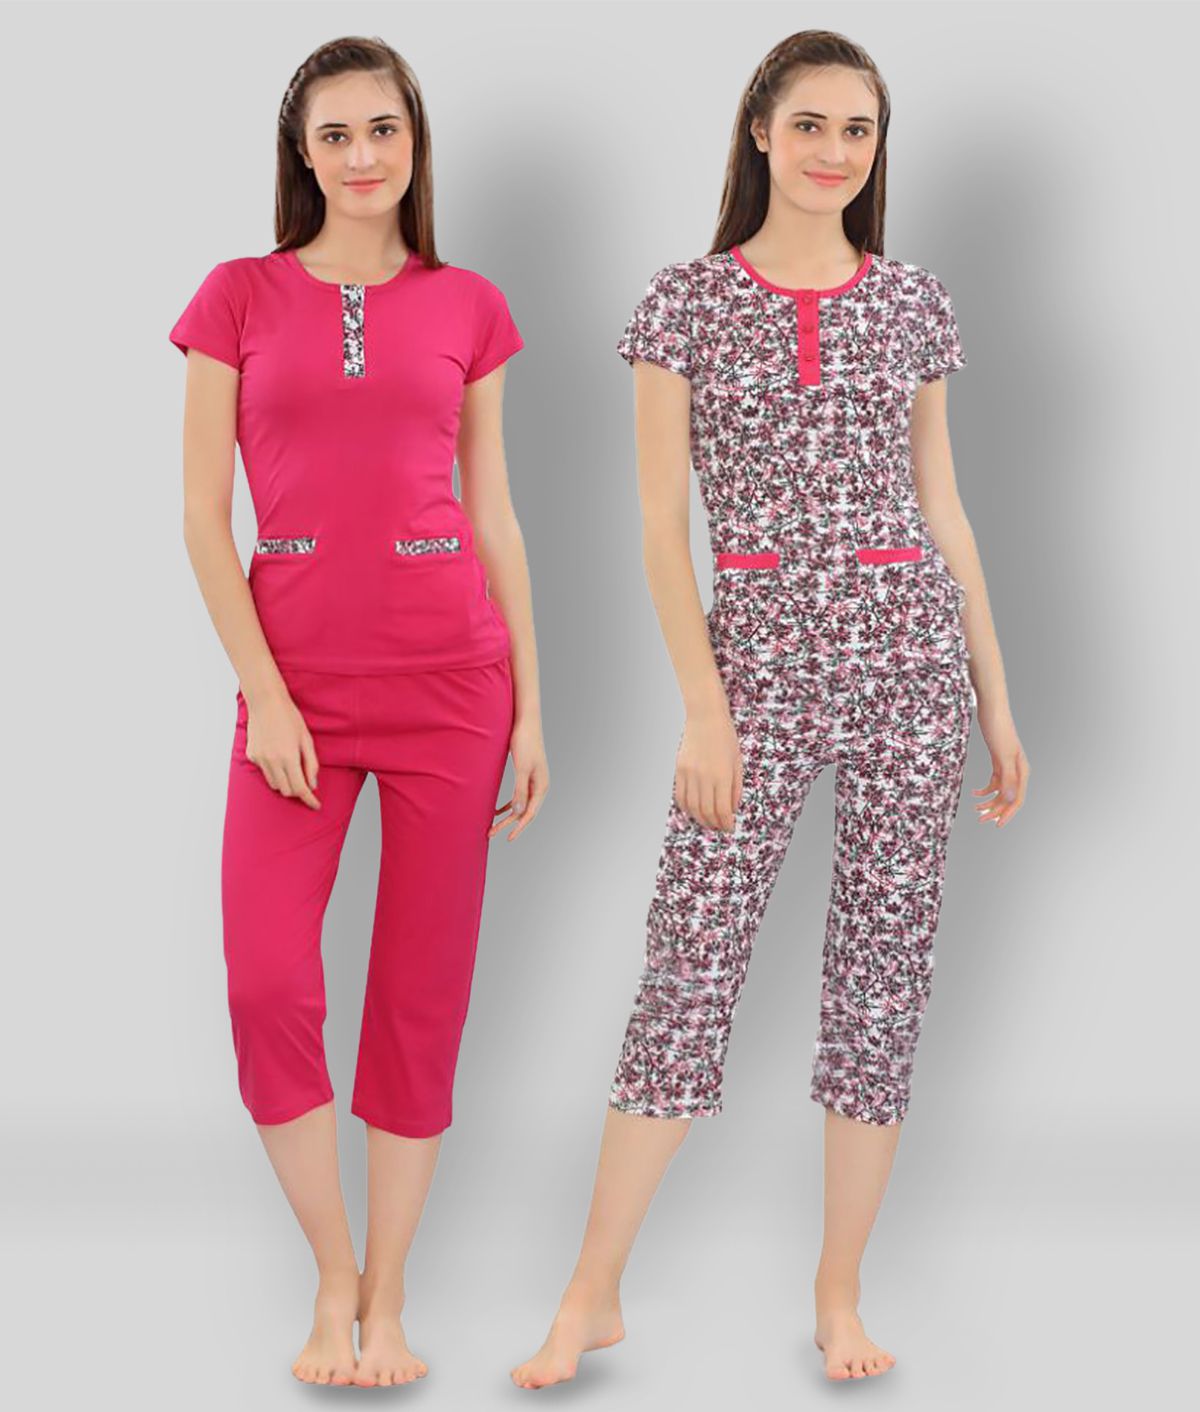     			Zebu - Multicolor Cotton Women's Nightwear Nightsuit Sets ( Pack of 3 )